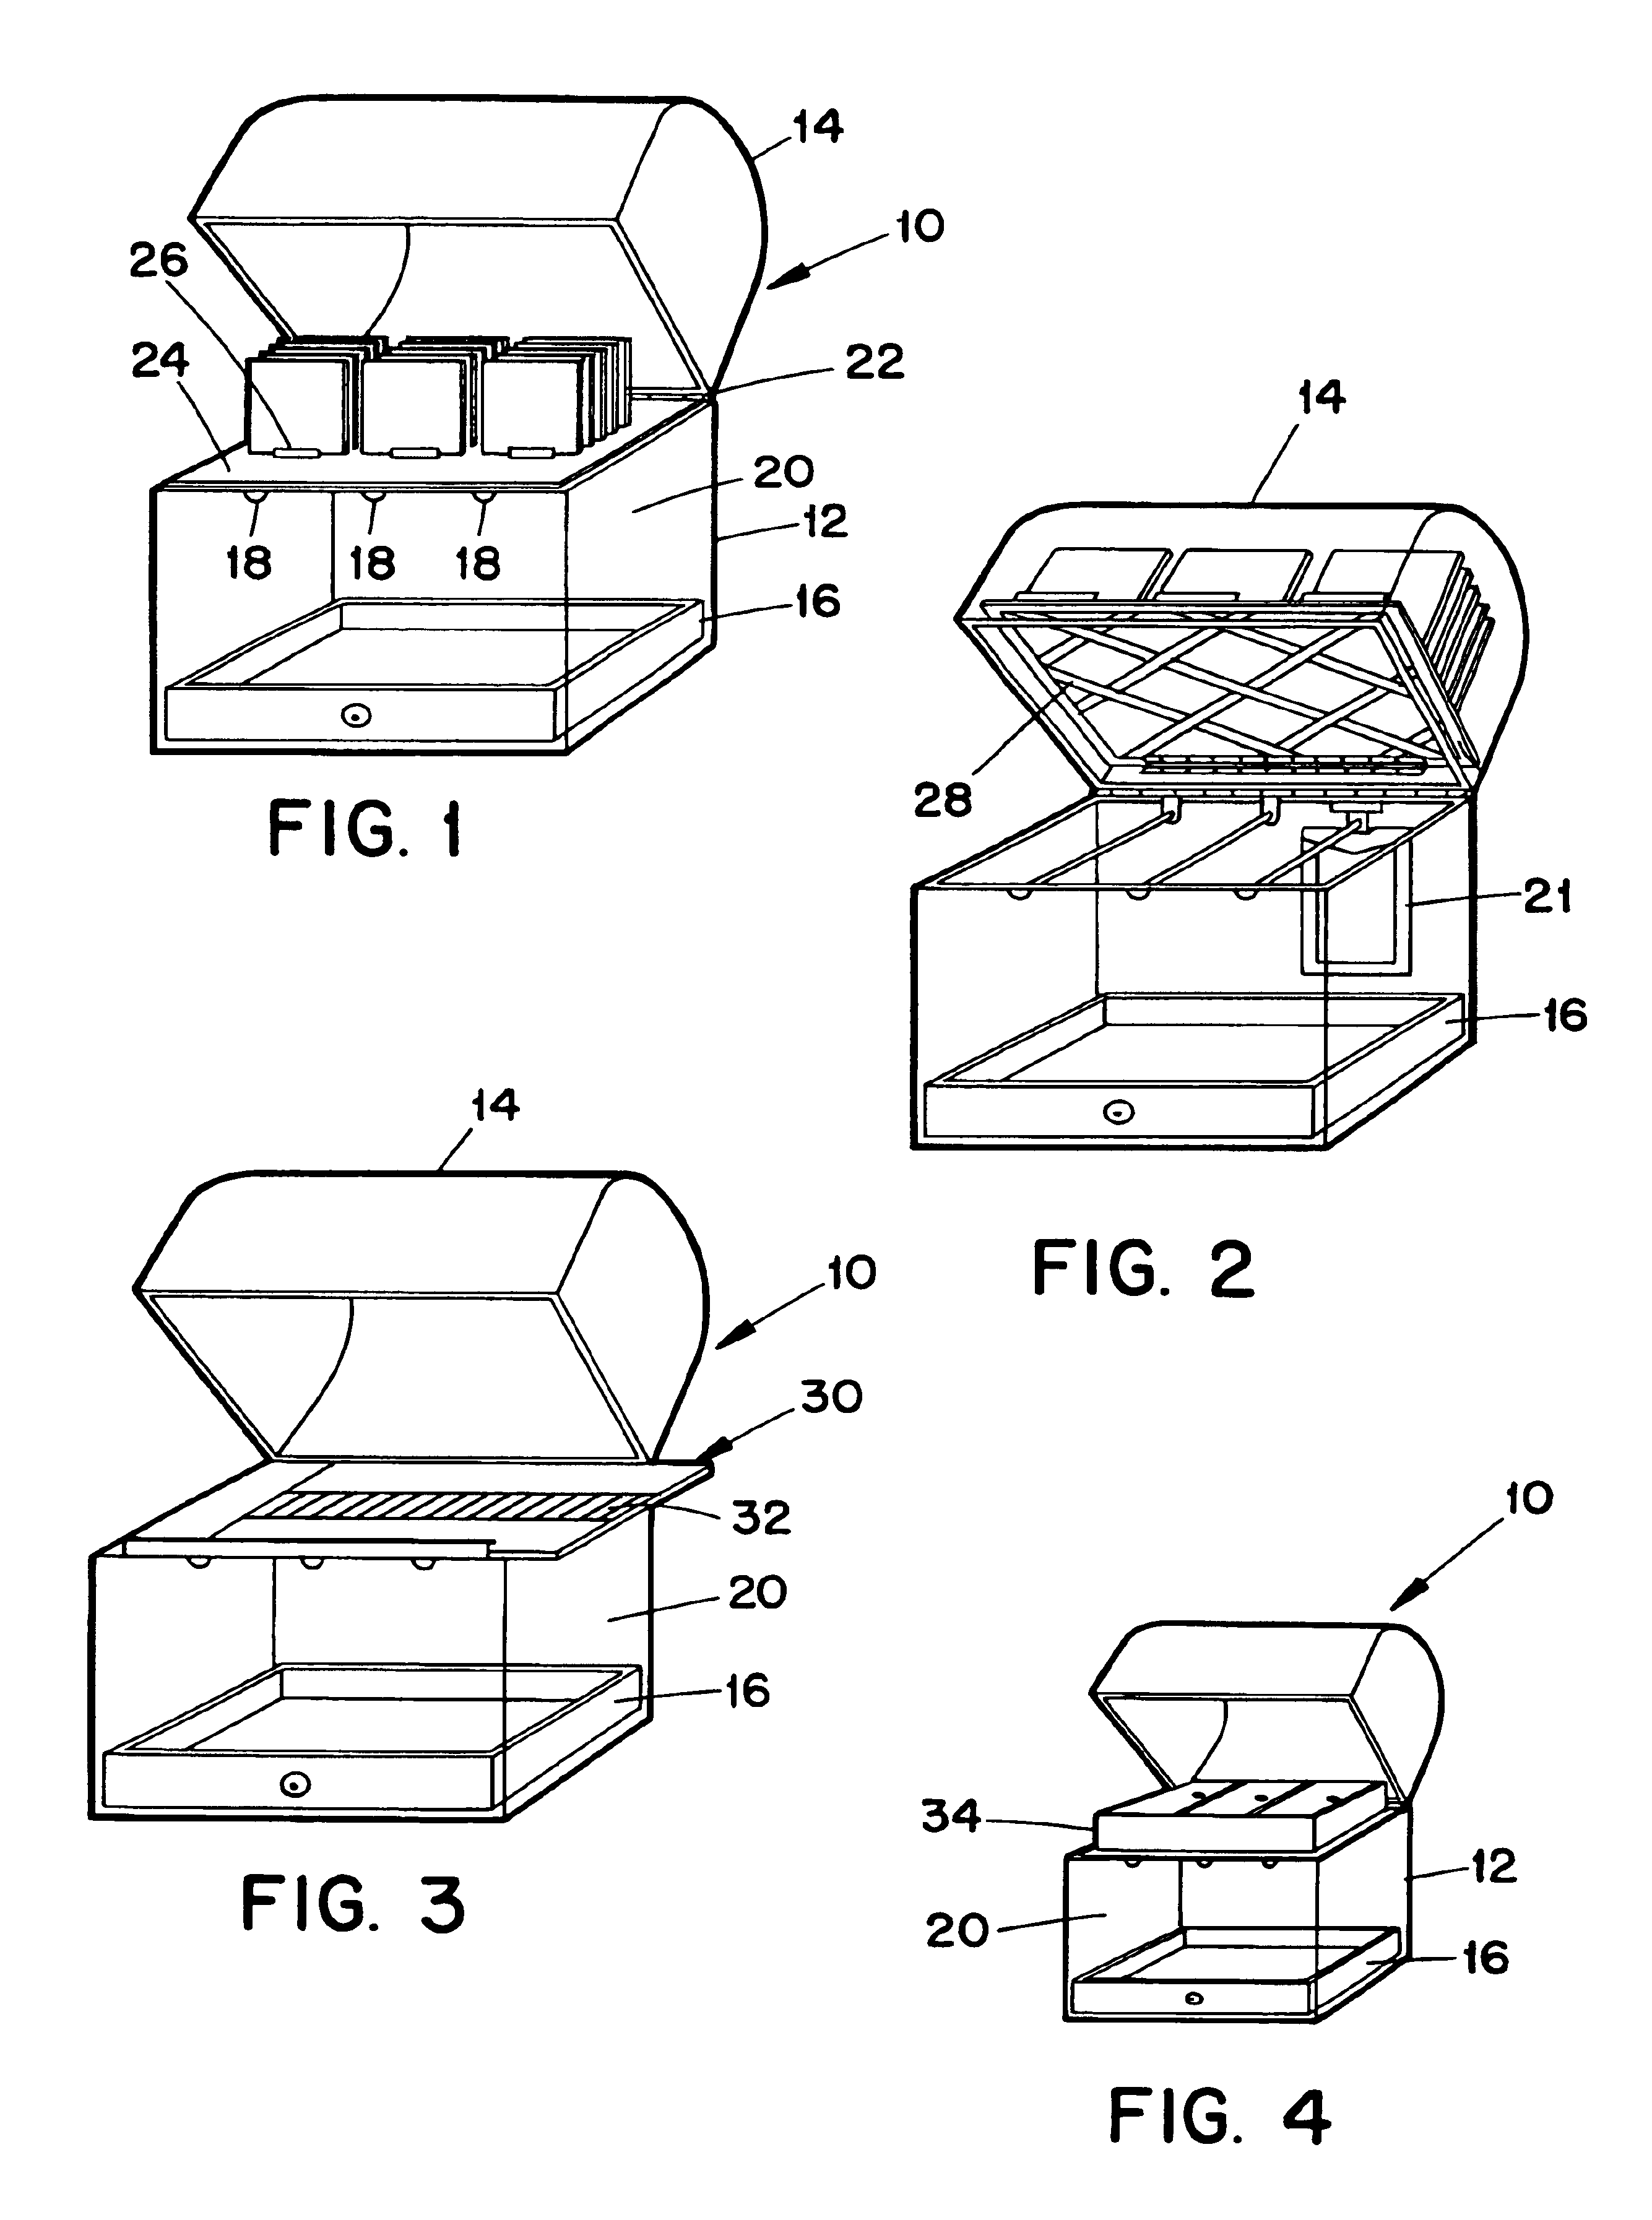 Multi-compartment storage device